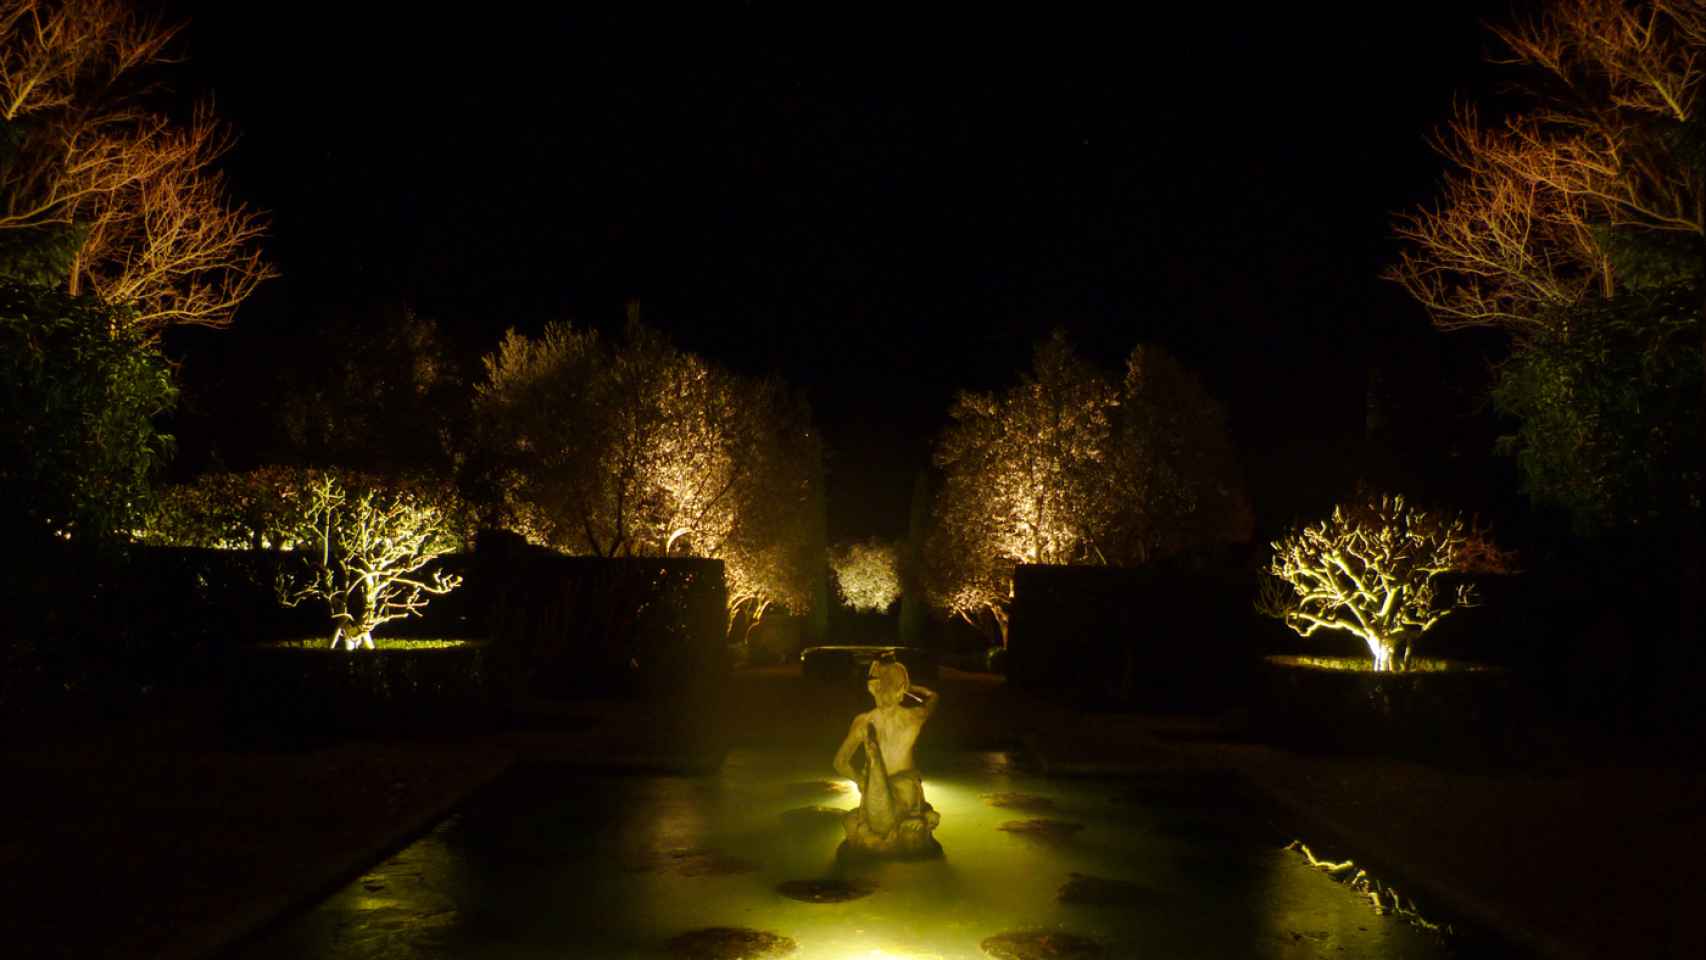 Iluminación de una jardín en Toledo (2011). Crea una escenografía nocturna, filtrando la luz a través de la vegetación del jardín.